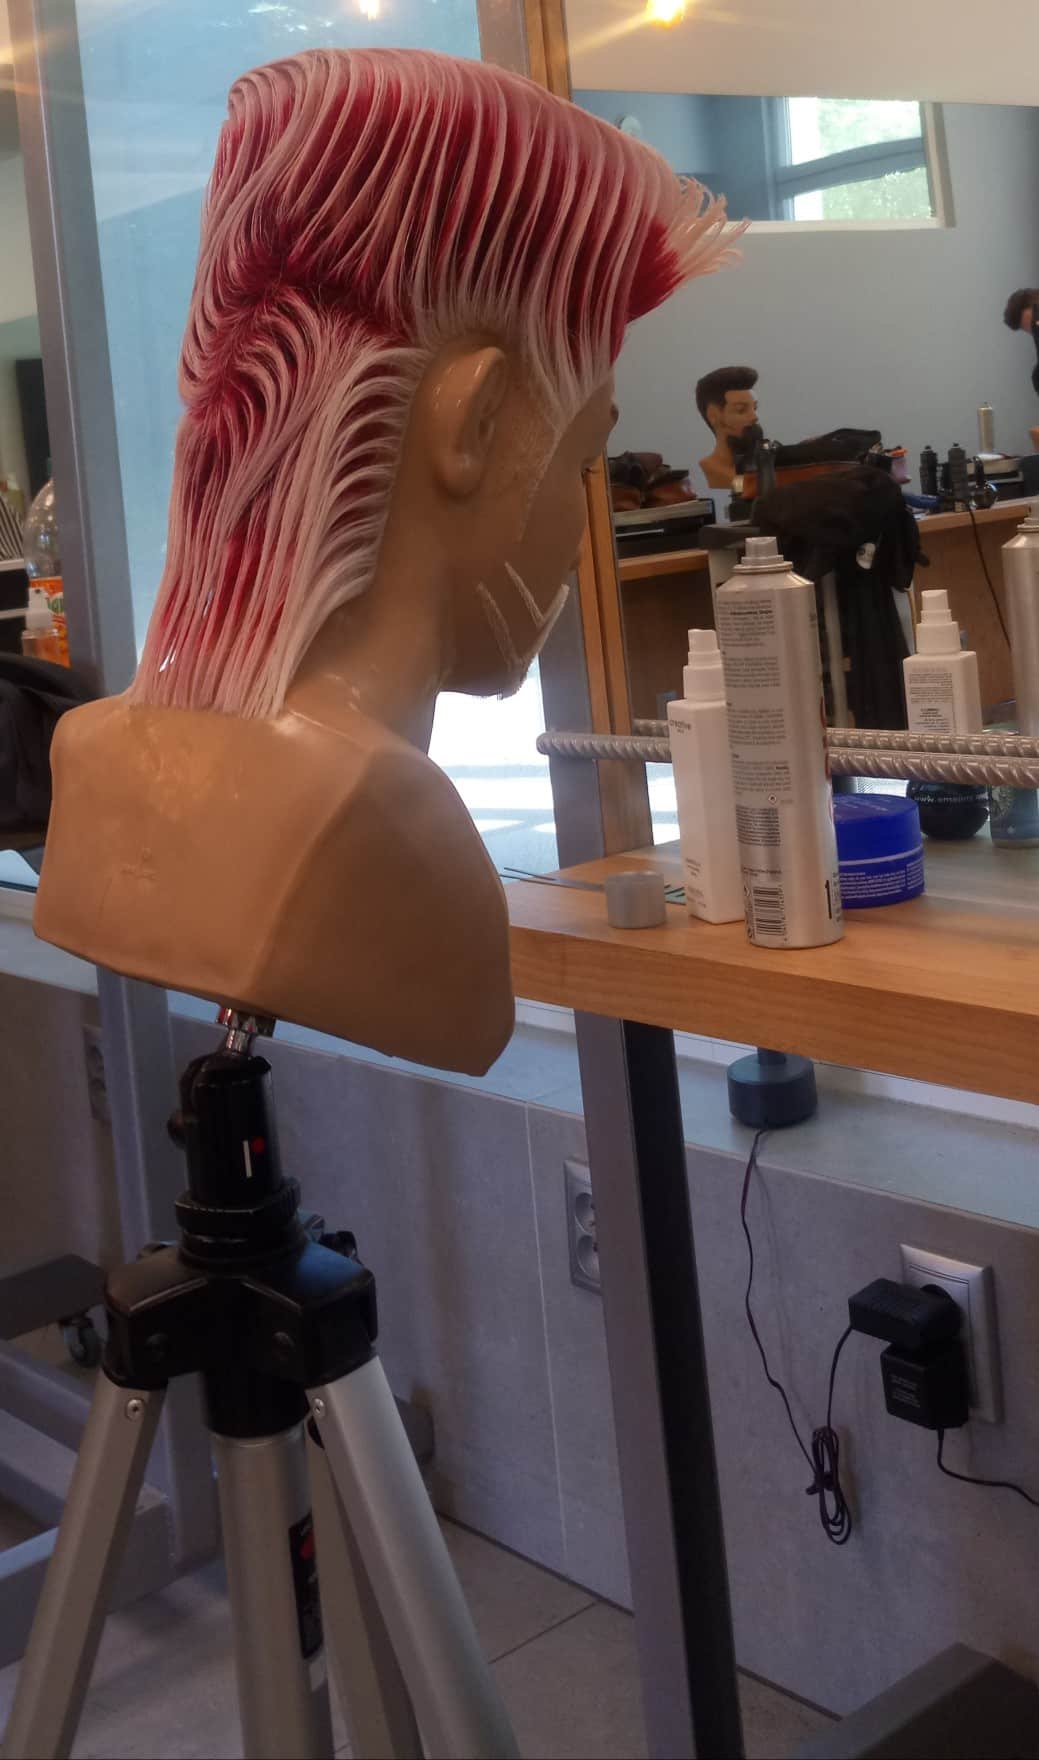 Aktualny Mistrz Świata we fryzjerstwie zaprasza do swojego nowego salonu